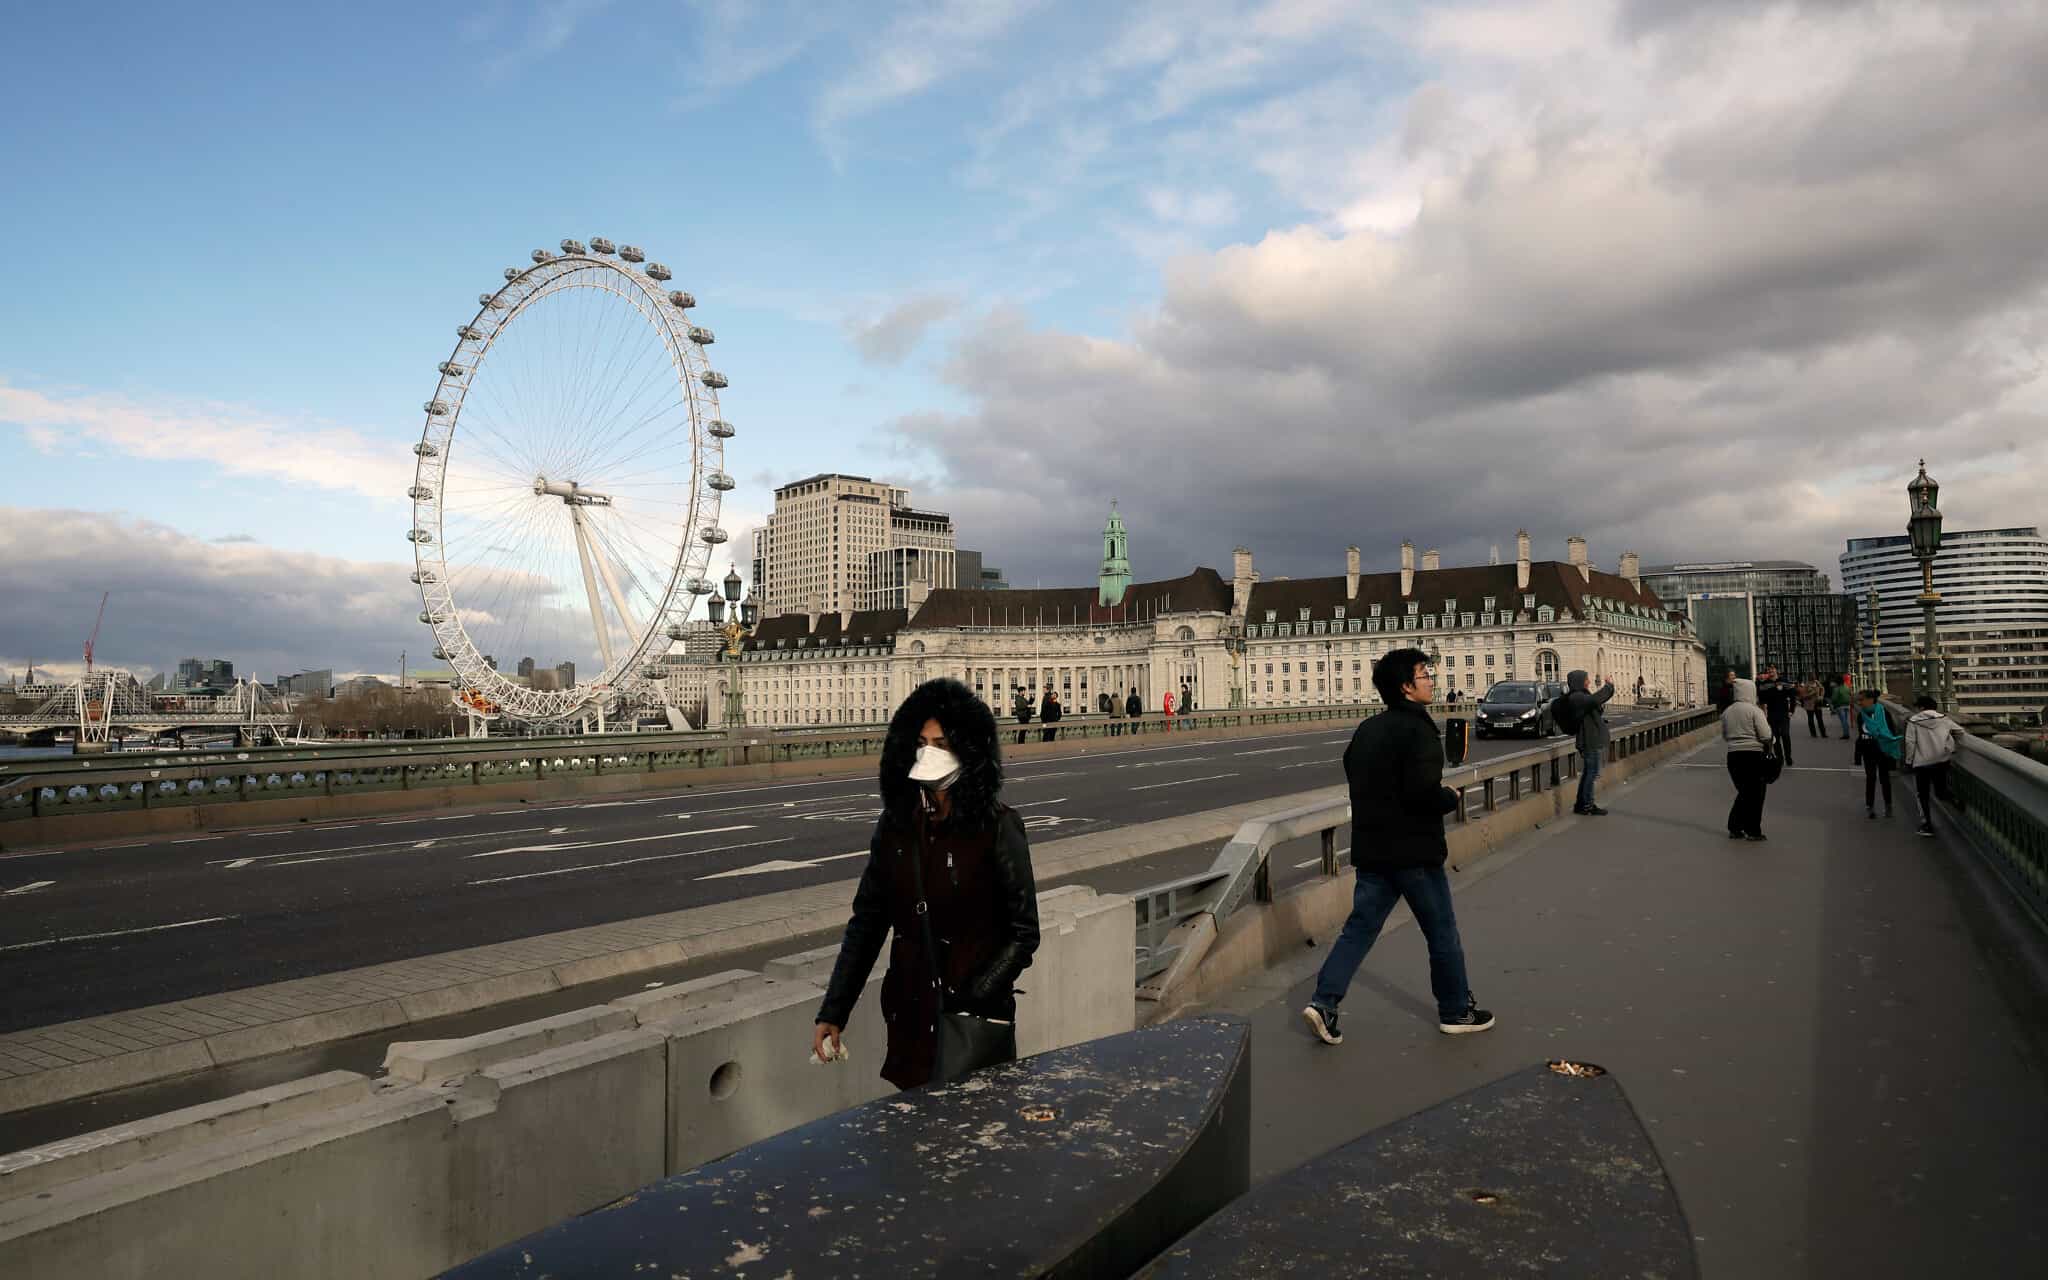 מגפת הקורונה בבריטניה (צילום: AP Photo/Matt Dunham)